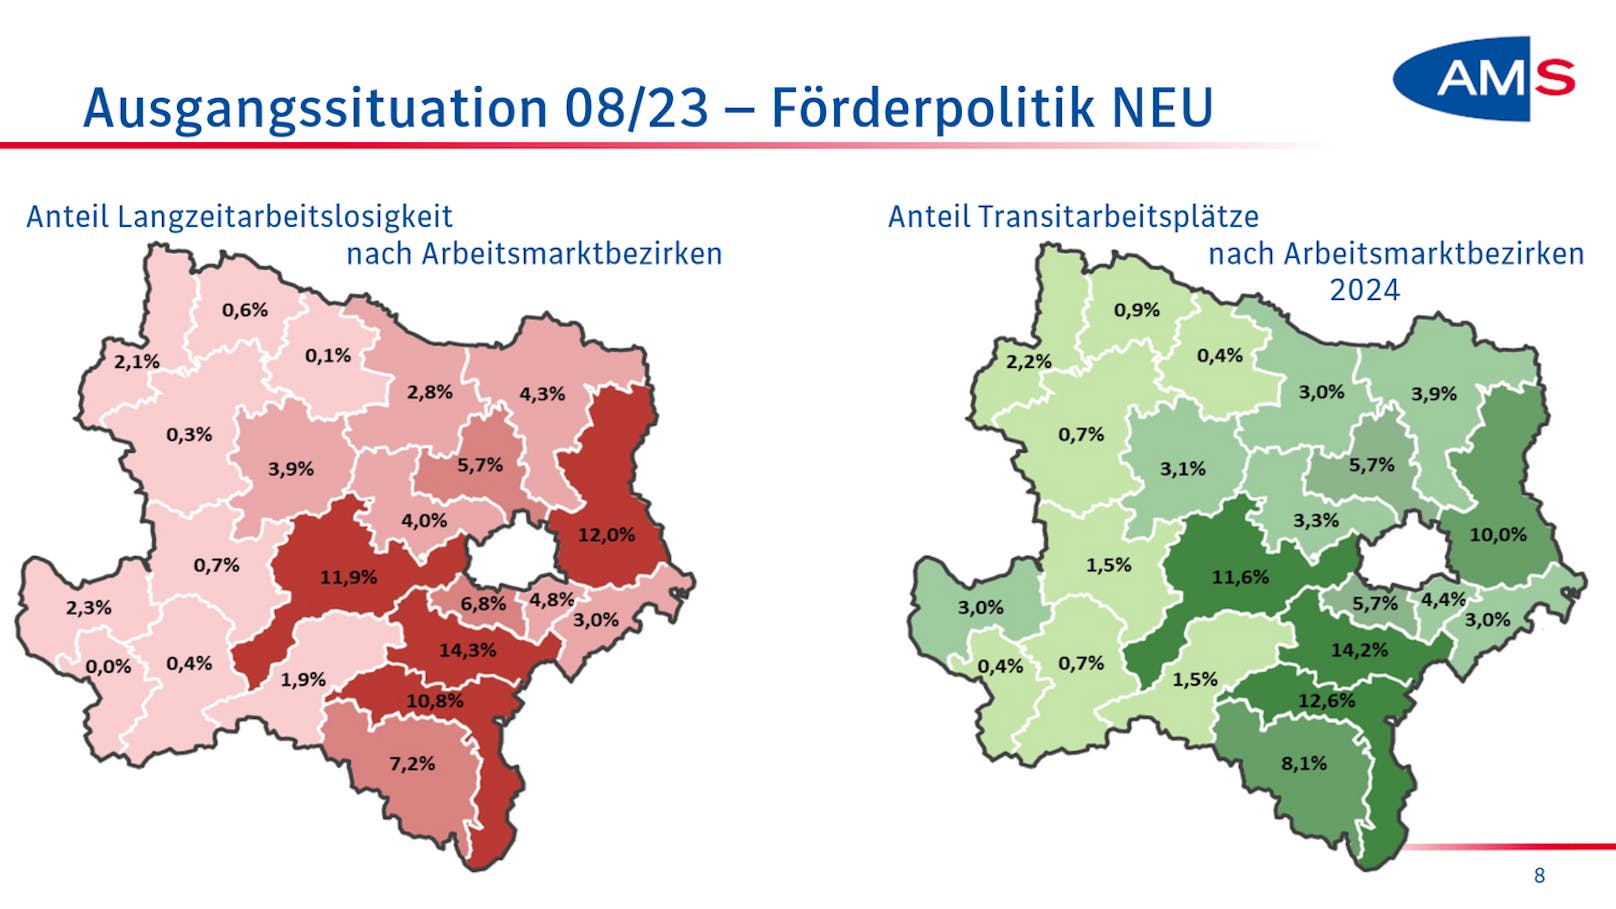 Der Anteil an Langzeitarbeitslosigkeit liegt im Ybbstal bei 0,0 %, in Zwettl bei 0,3%, in Waidhofen/Thaya bei 0,6% und im Bezirk Horn bei 0,1%. Im Gegensatz dazu: Im Bezirk Gänserndorf liegt sie bei 12%, im Bezirk Baden bei 14,3%, in St. Pölten-Land bei 11,9% und im Bezirk Wr. Neustadt-Land bei 10,8 %.